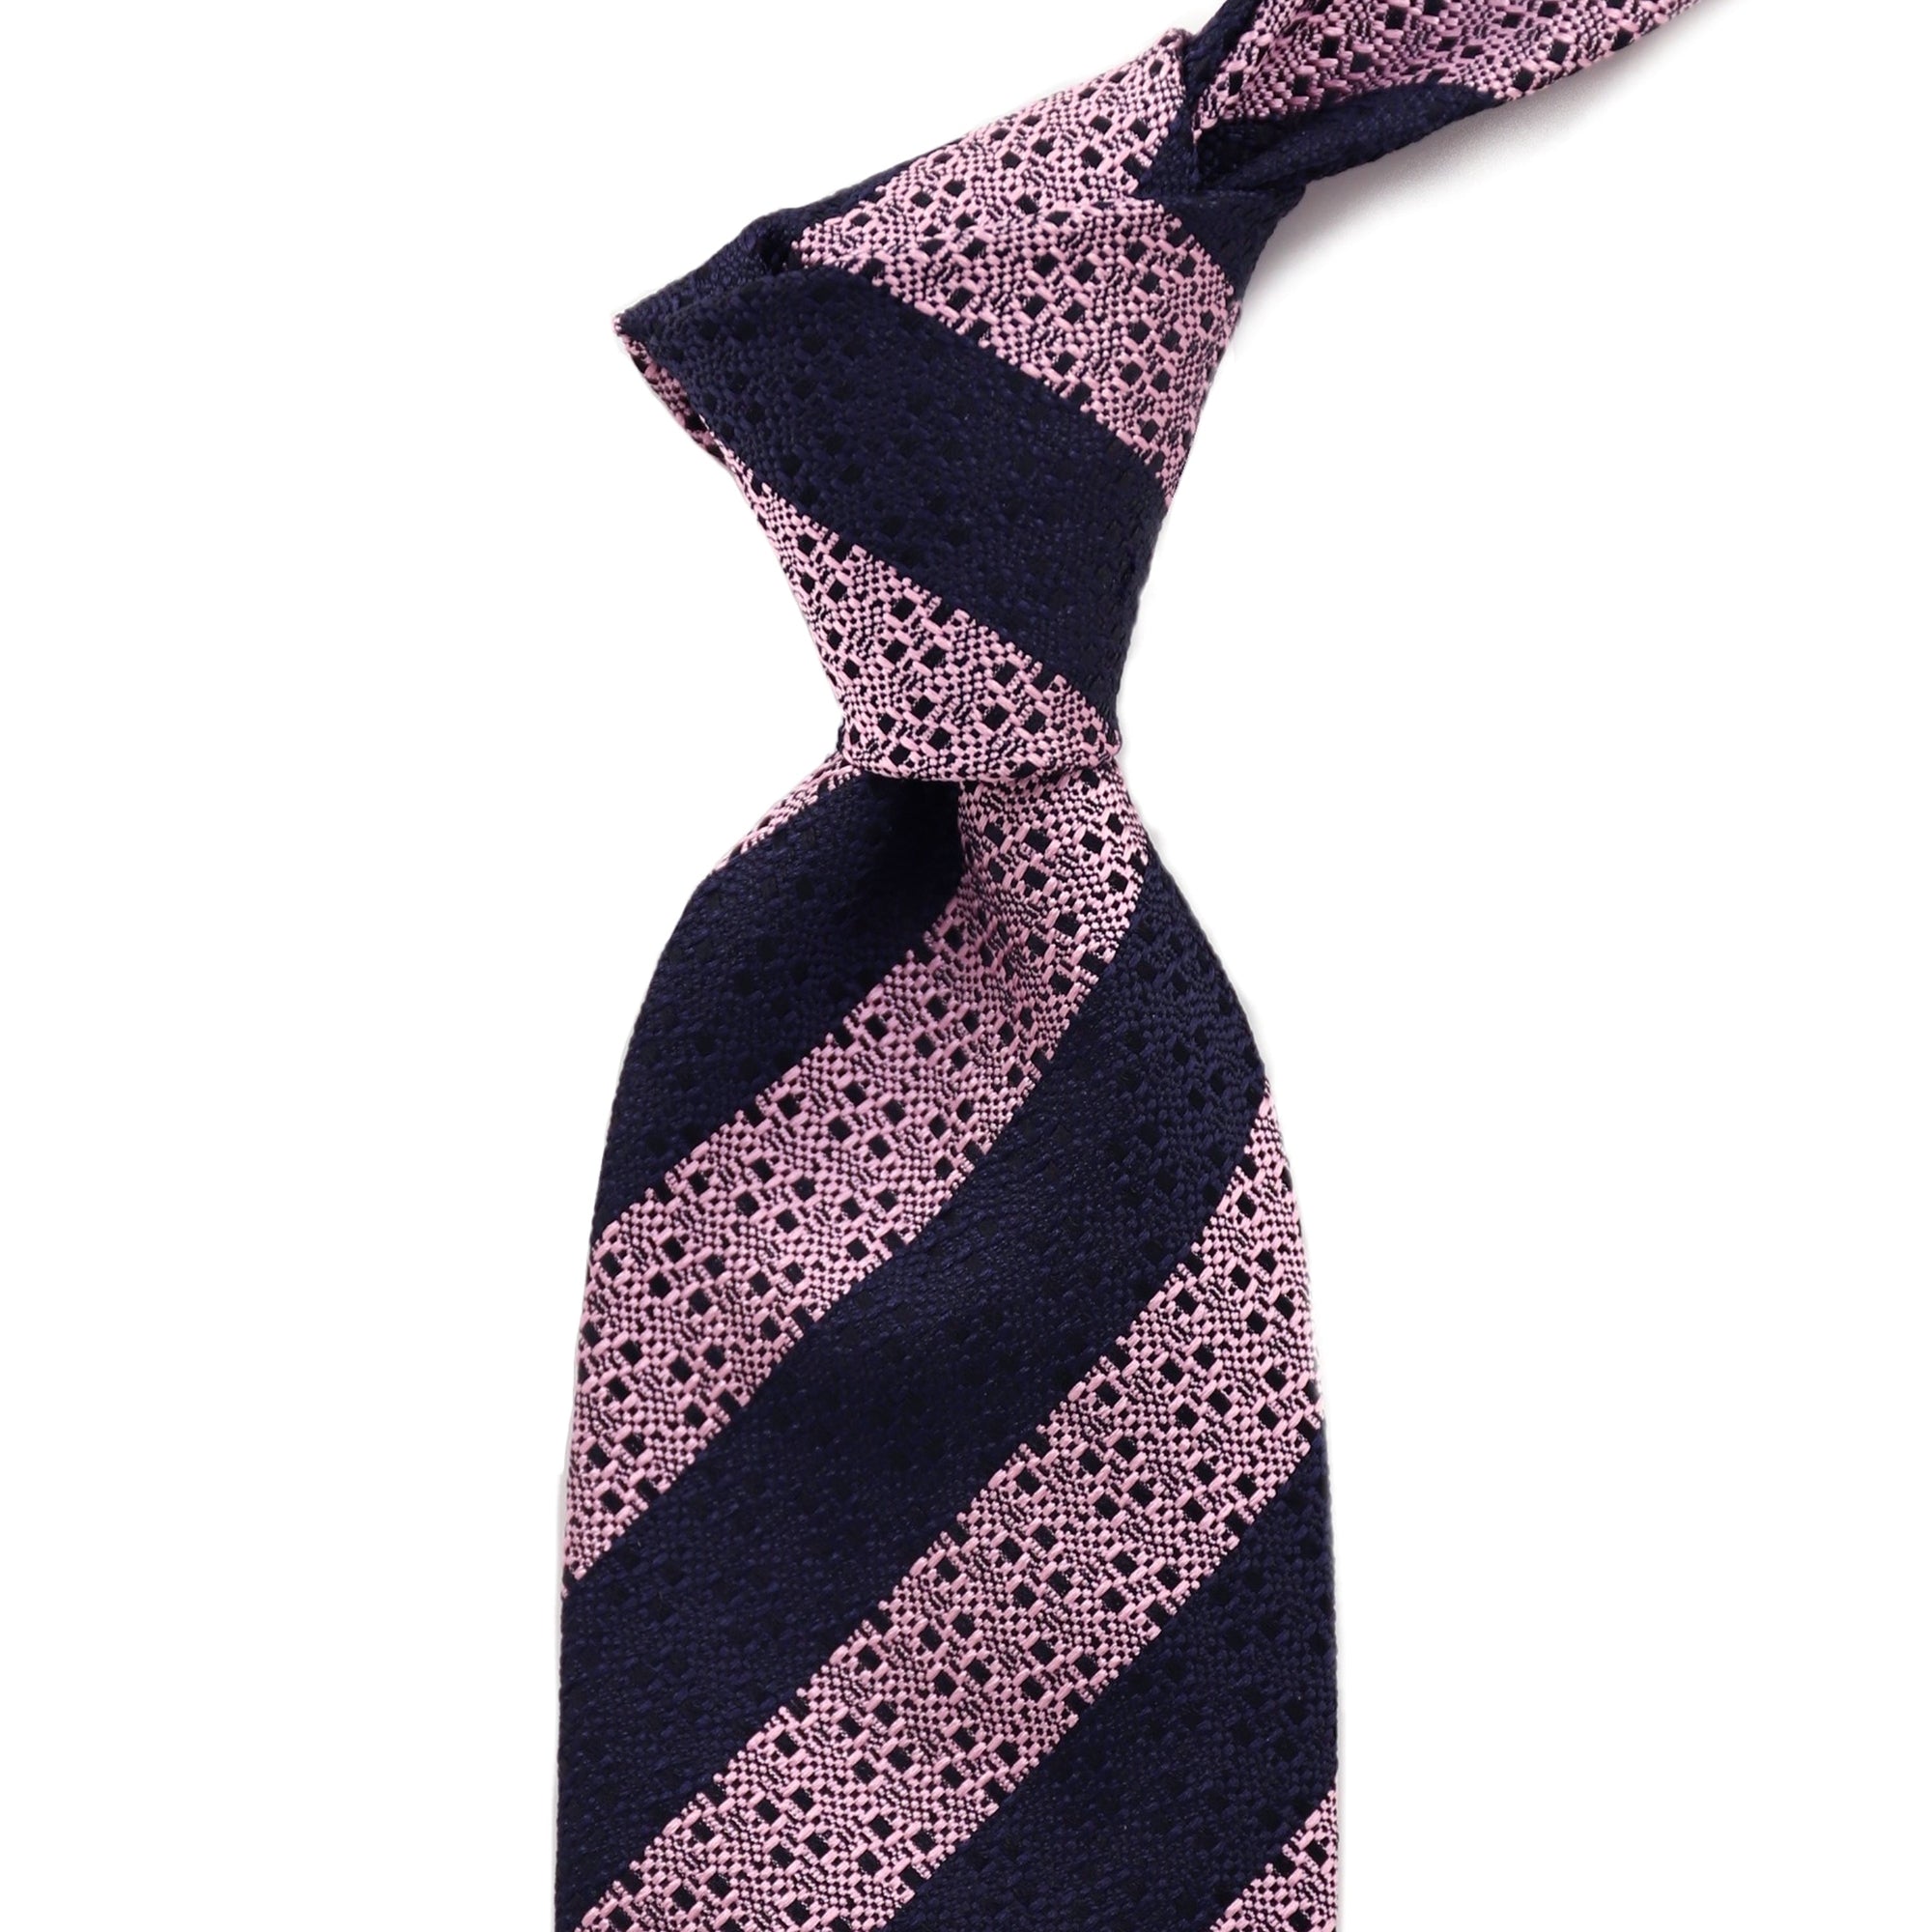 ERMENEGILDO ZEGNA COUTURE Couture Silk Tie 21-Cufflinks.com.sg | Neckties.com.sg